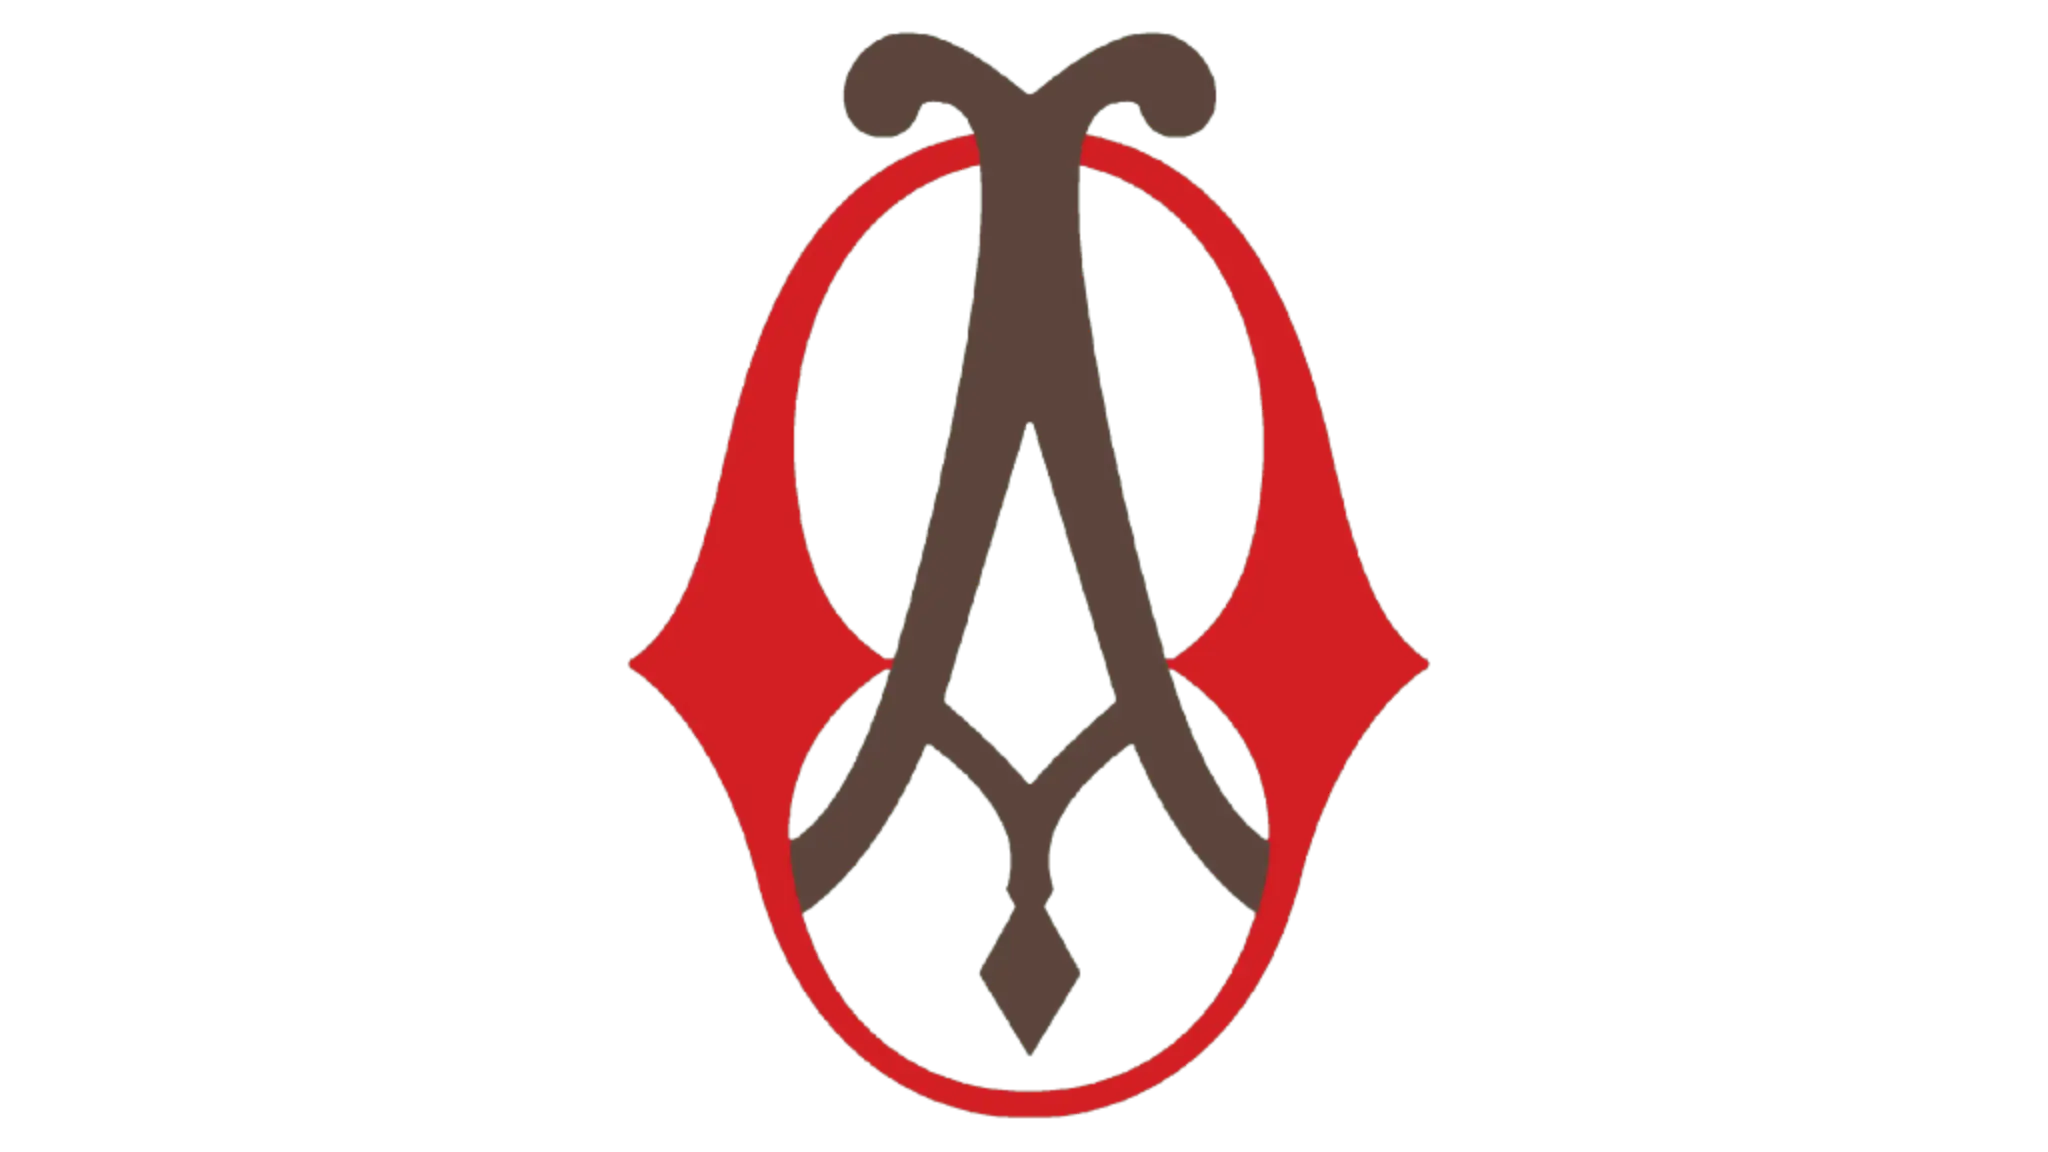 Primeiro logótipo da Opel (1862 – 1910). O logo tinha a letra castanha "A", inscrita dentro da letra "O" a vermelho.